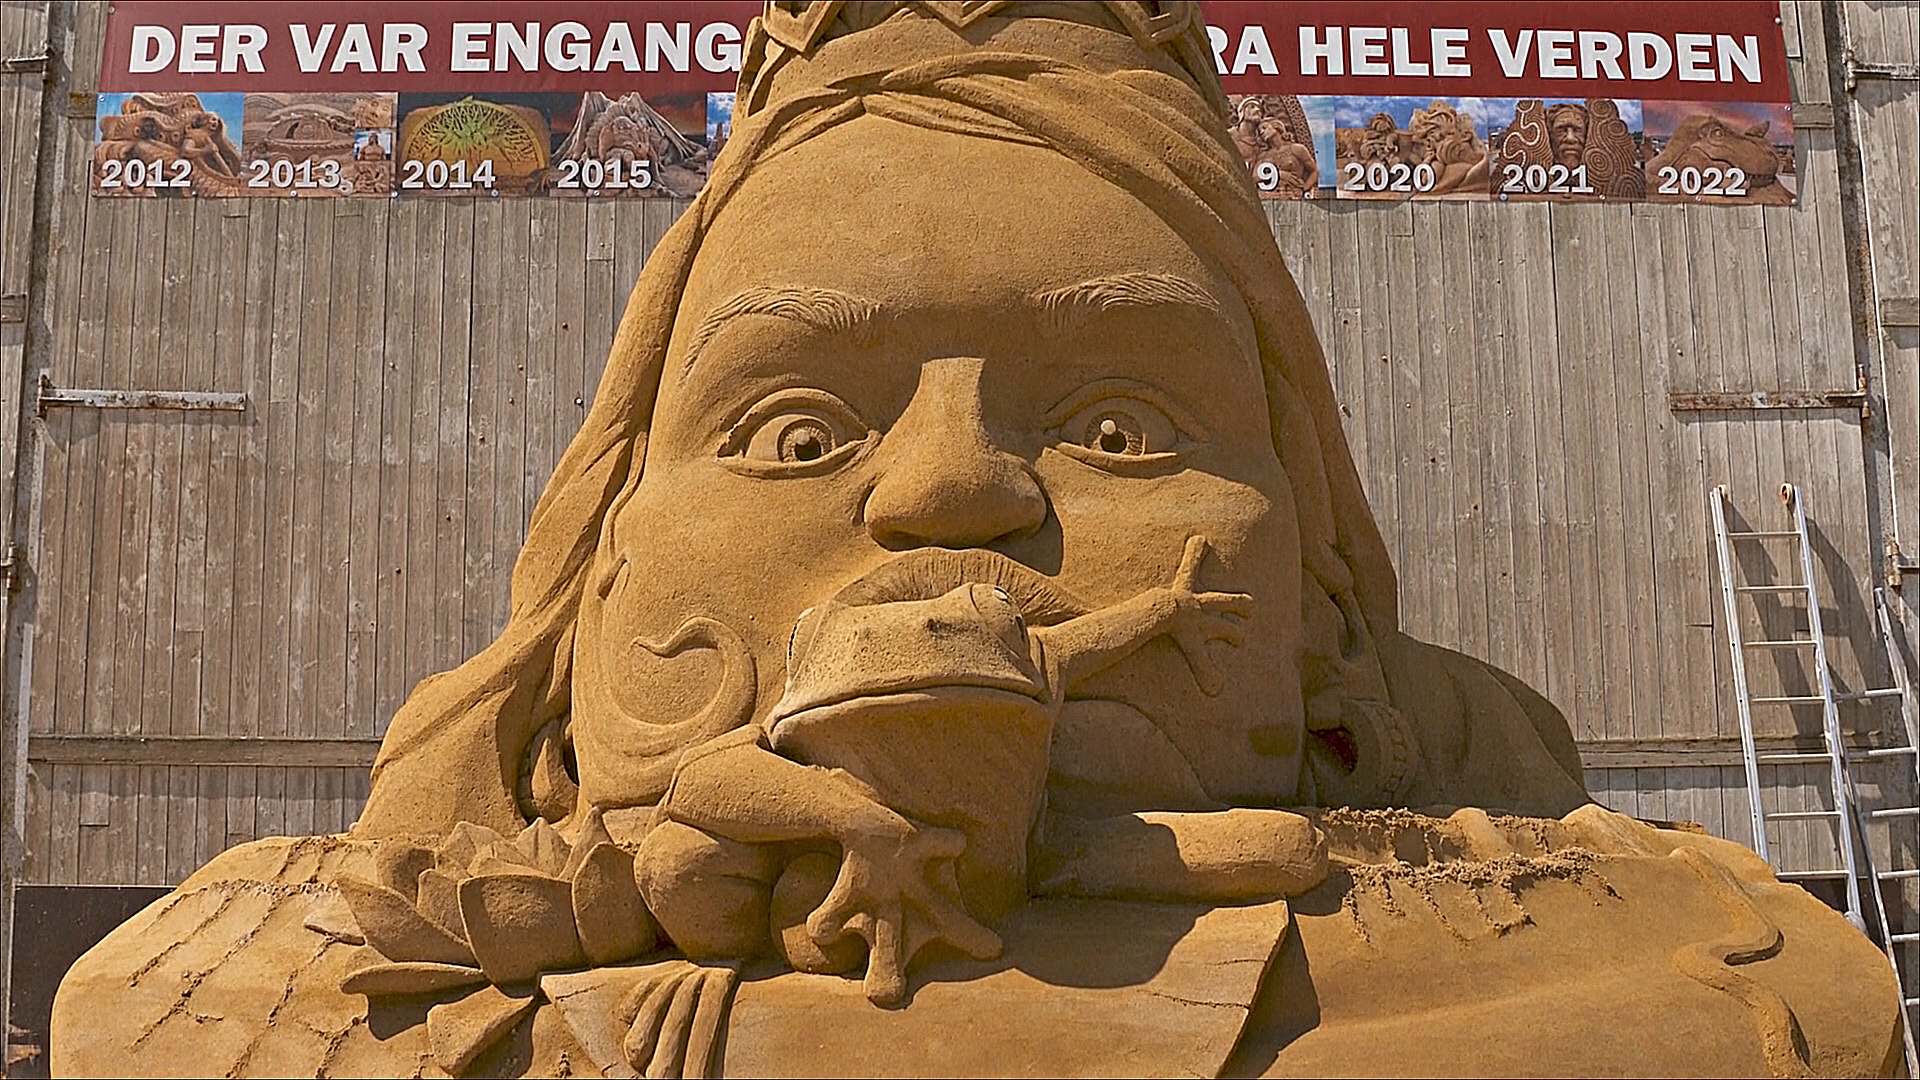 Сказкам разных народов посвятили фестиваль песчаных скульптур в Дании